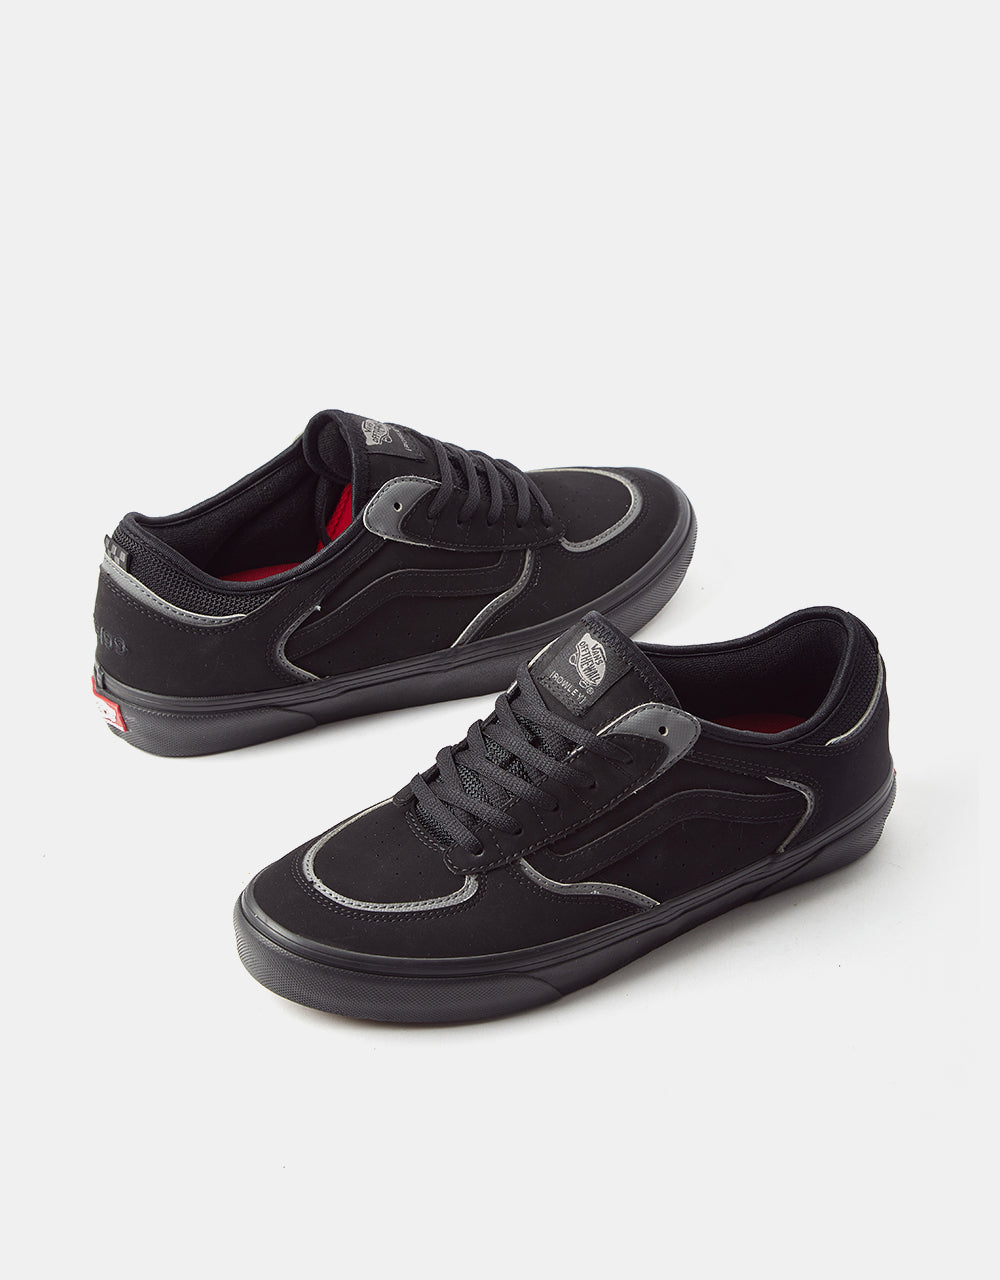 Vans Skate Rowley Skate Shoes - Black/Pewter